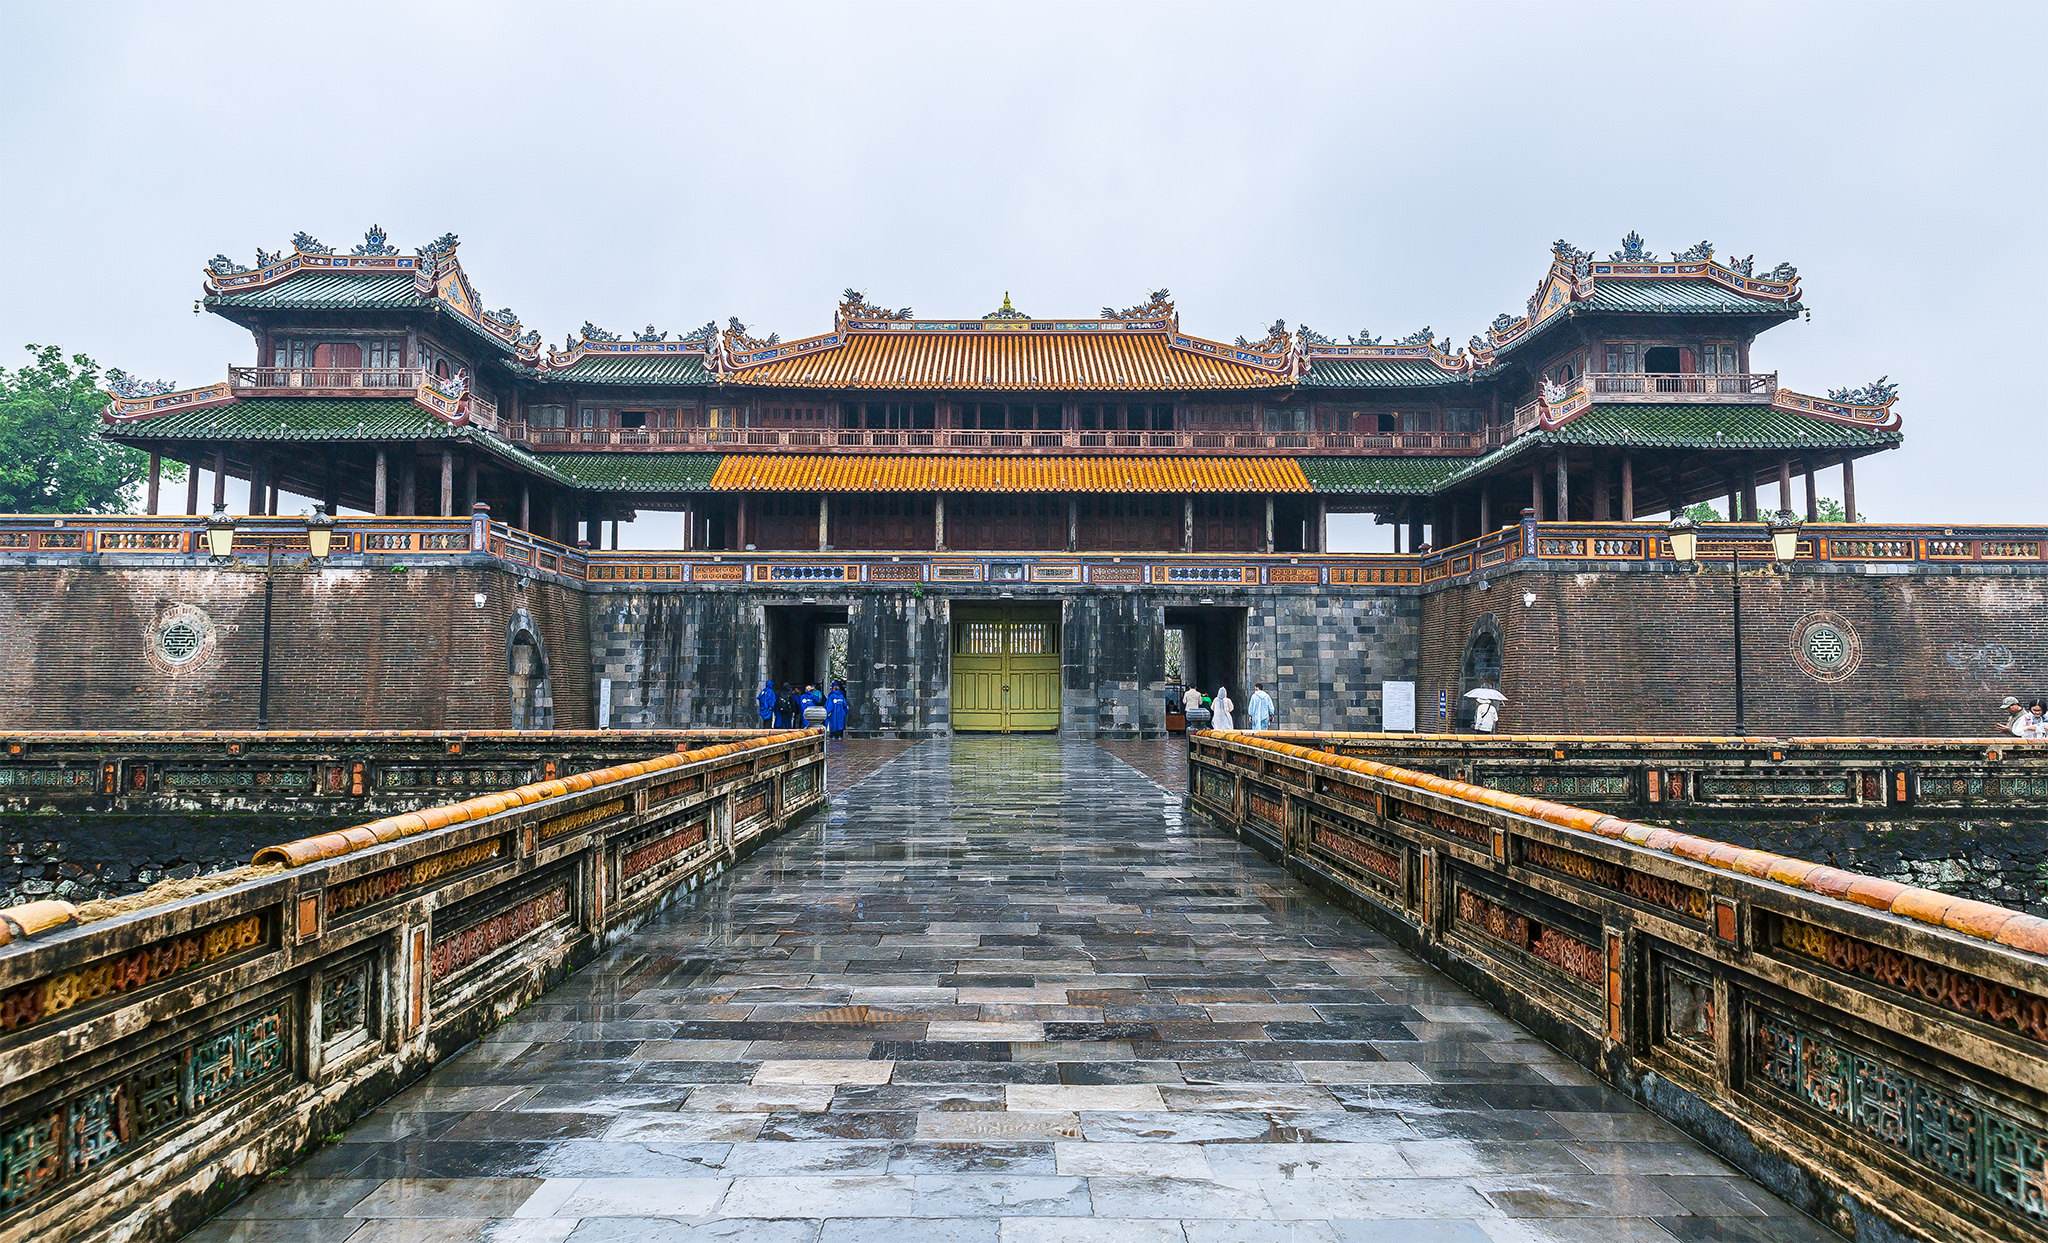 原创越南顺化皇城是北京故宫的翻版,越南人能看懂里面的汉字吗?